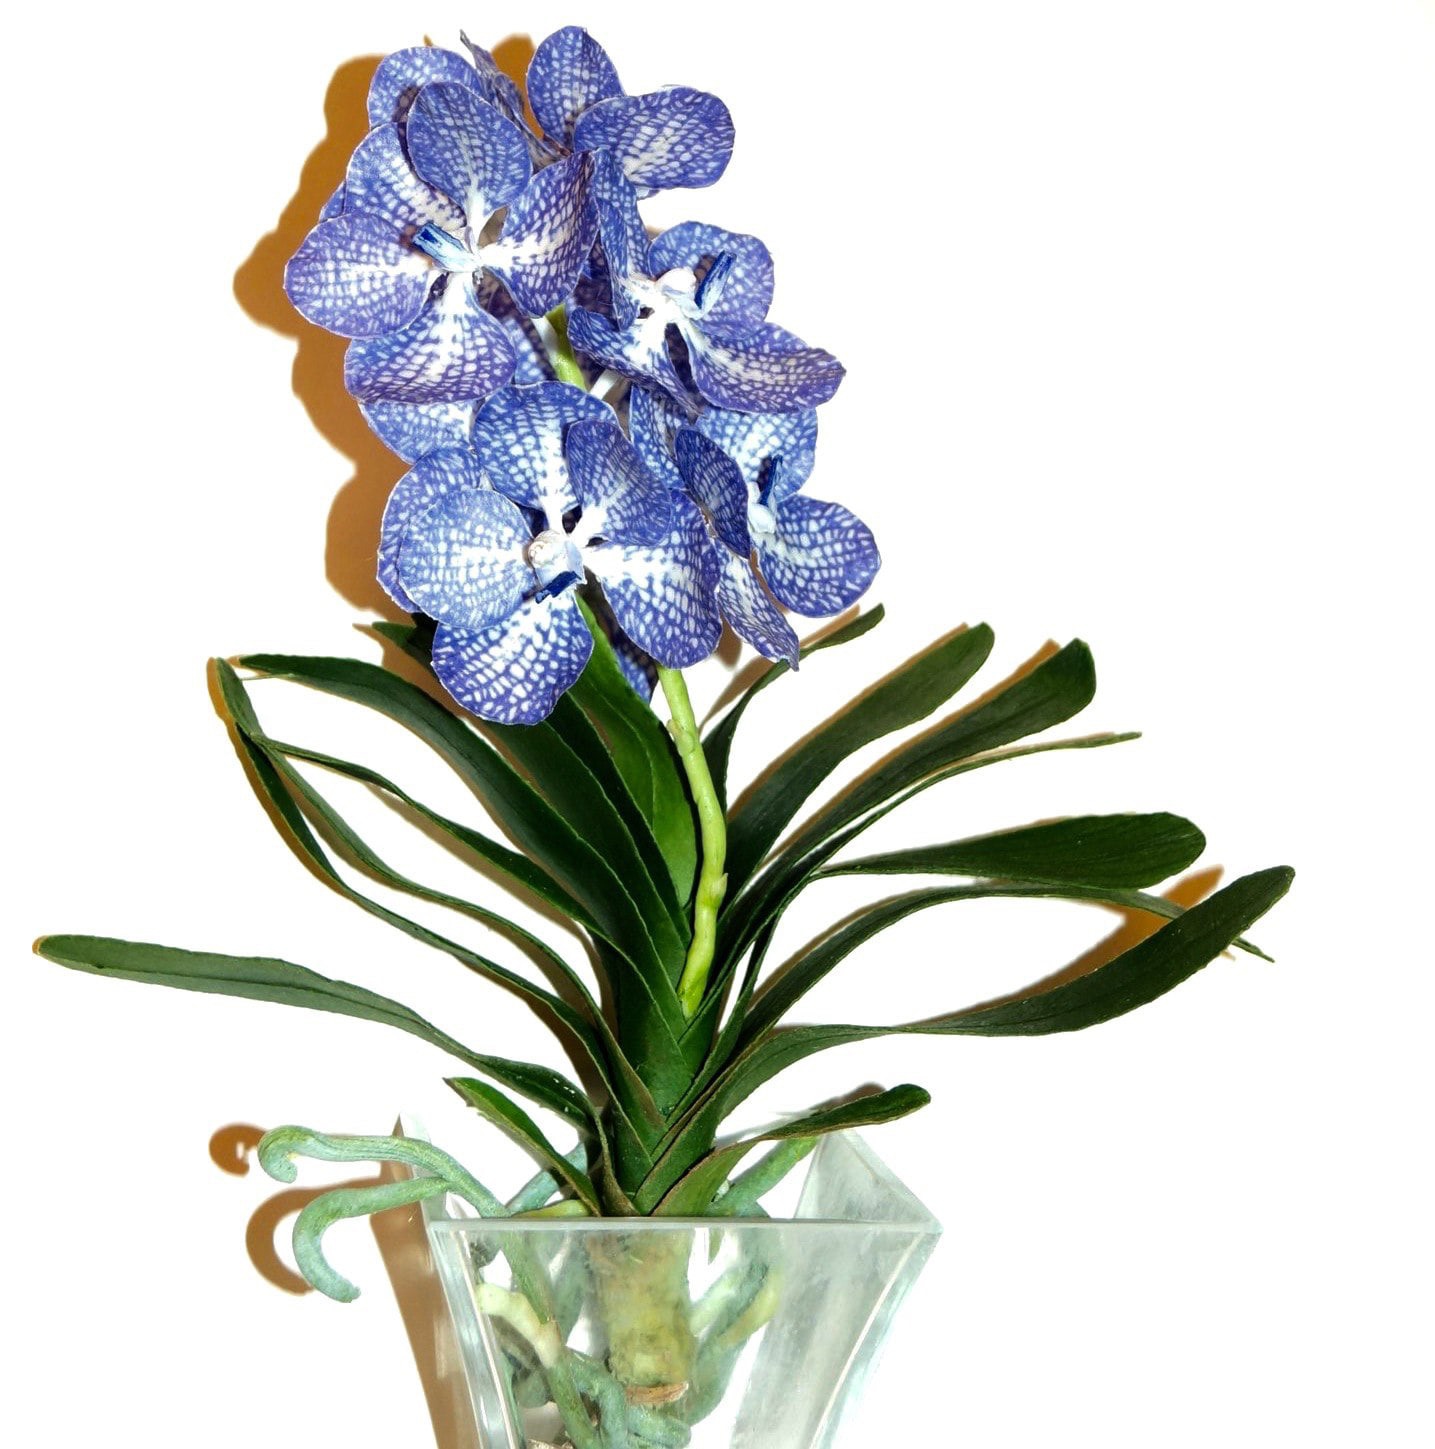 5 марта в 14.00 — онлайн мастер-класс «Орхидея»